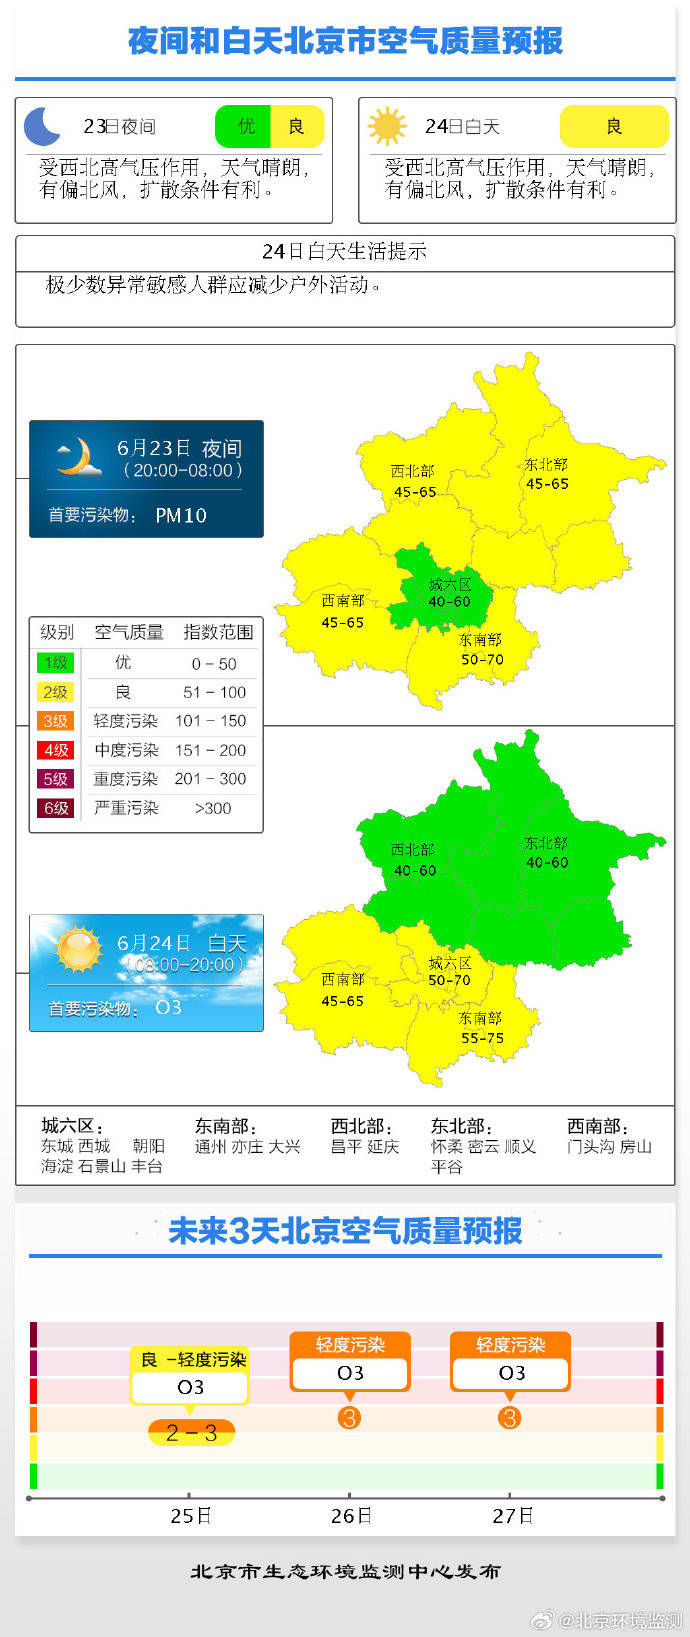 24日大气扩散条件有利 目前北京空气质量达到良